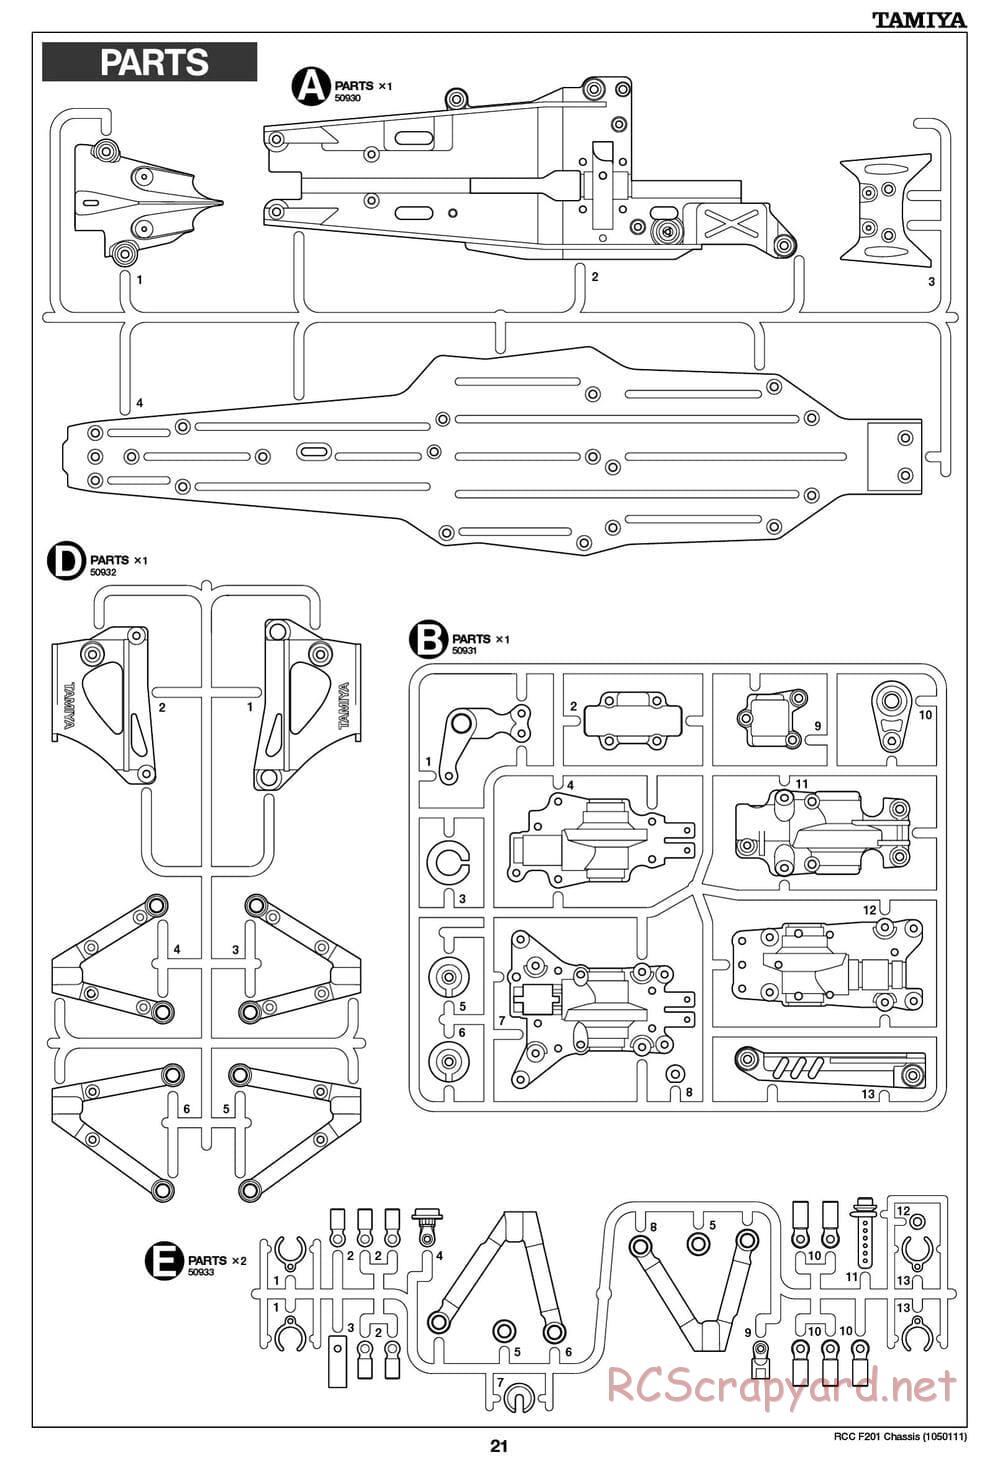 Tamiya - F201 Chassis - Manual - Page 21